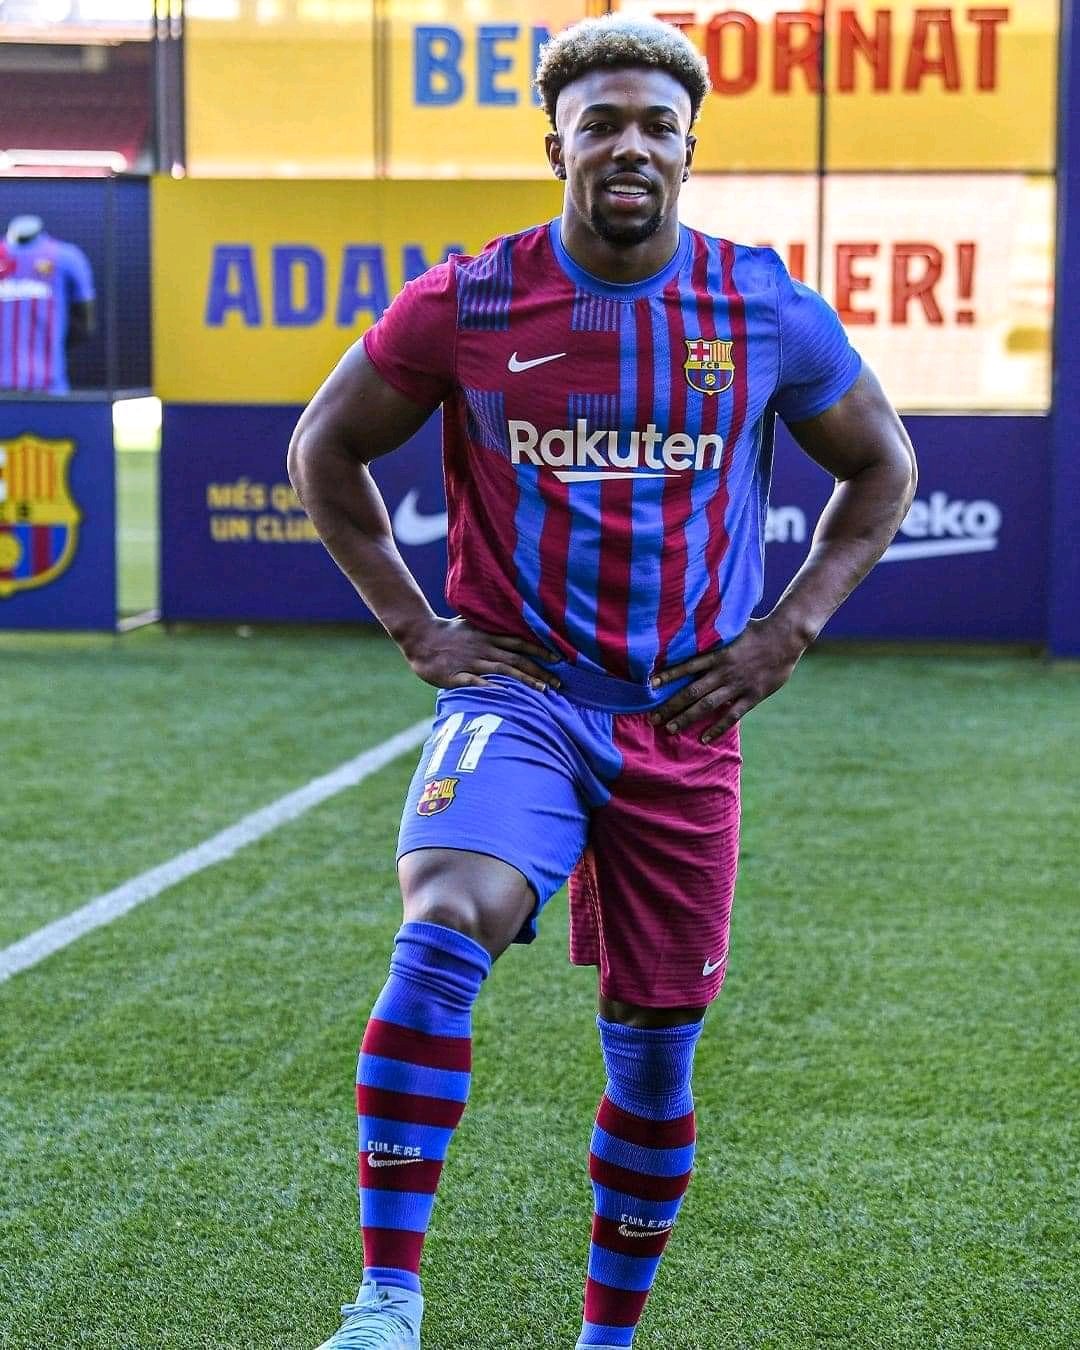 Barça, The presentation of Adama Traoré (Images)